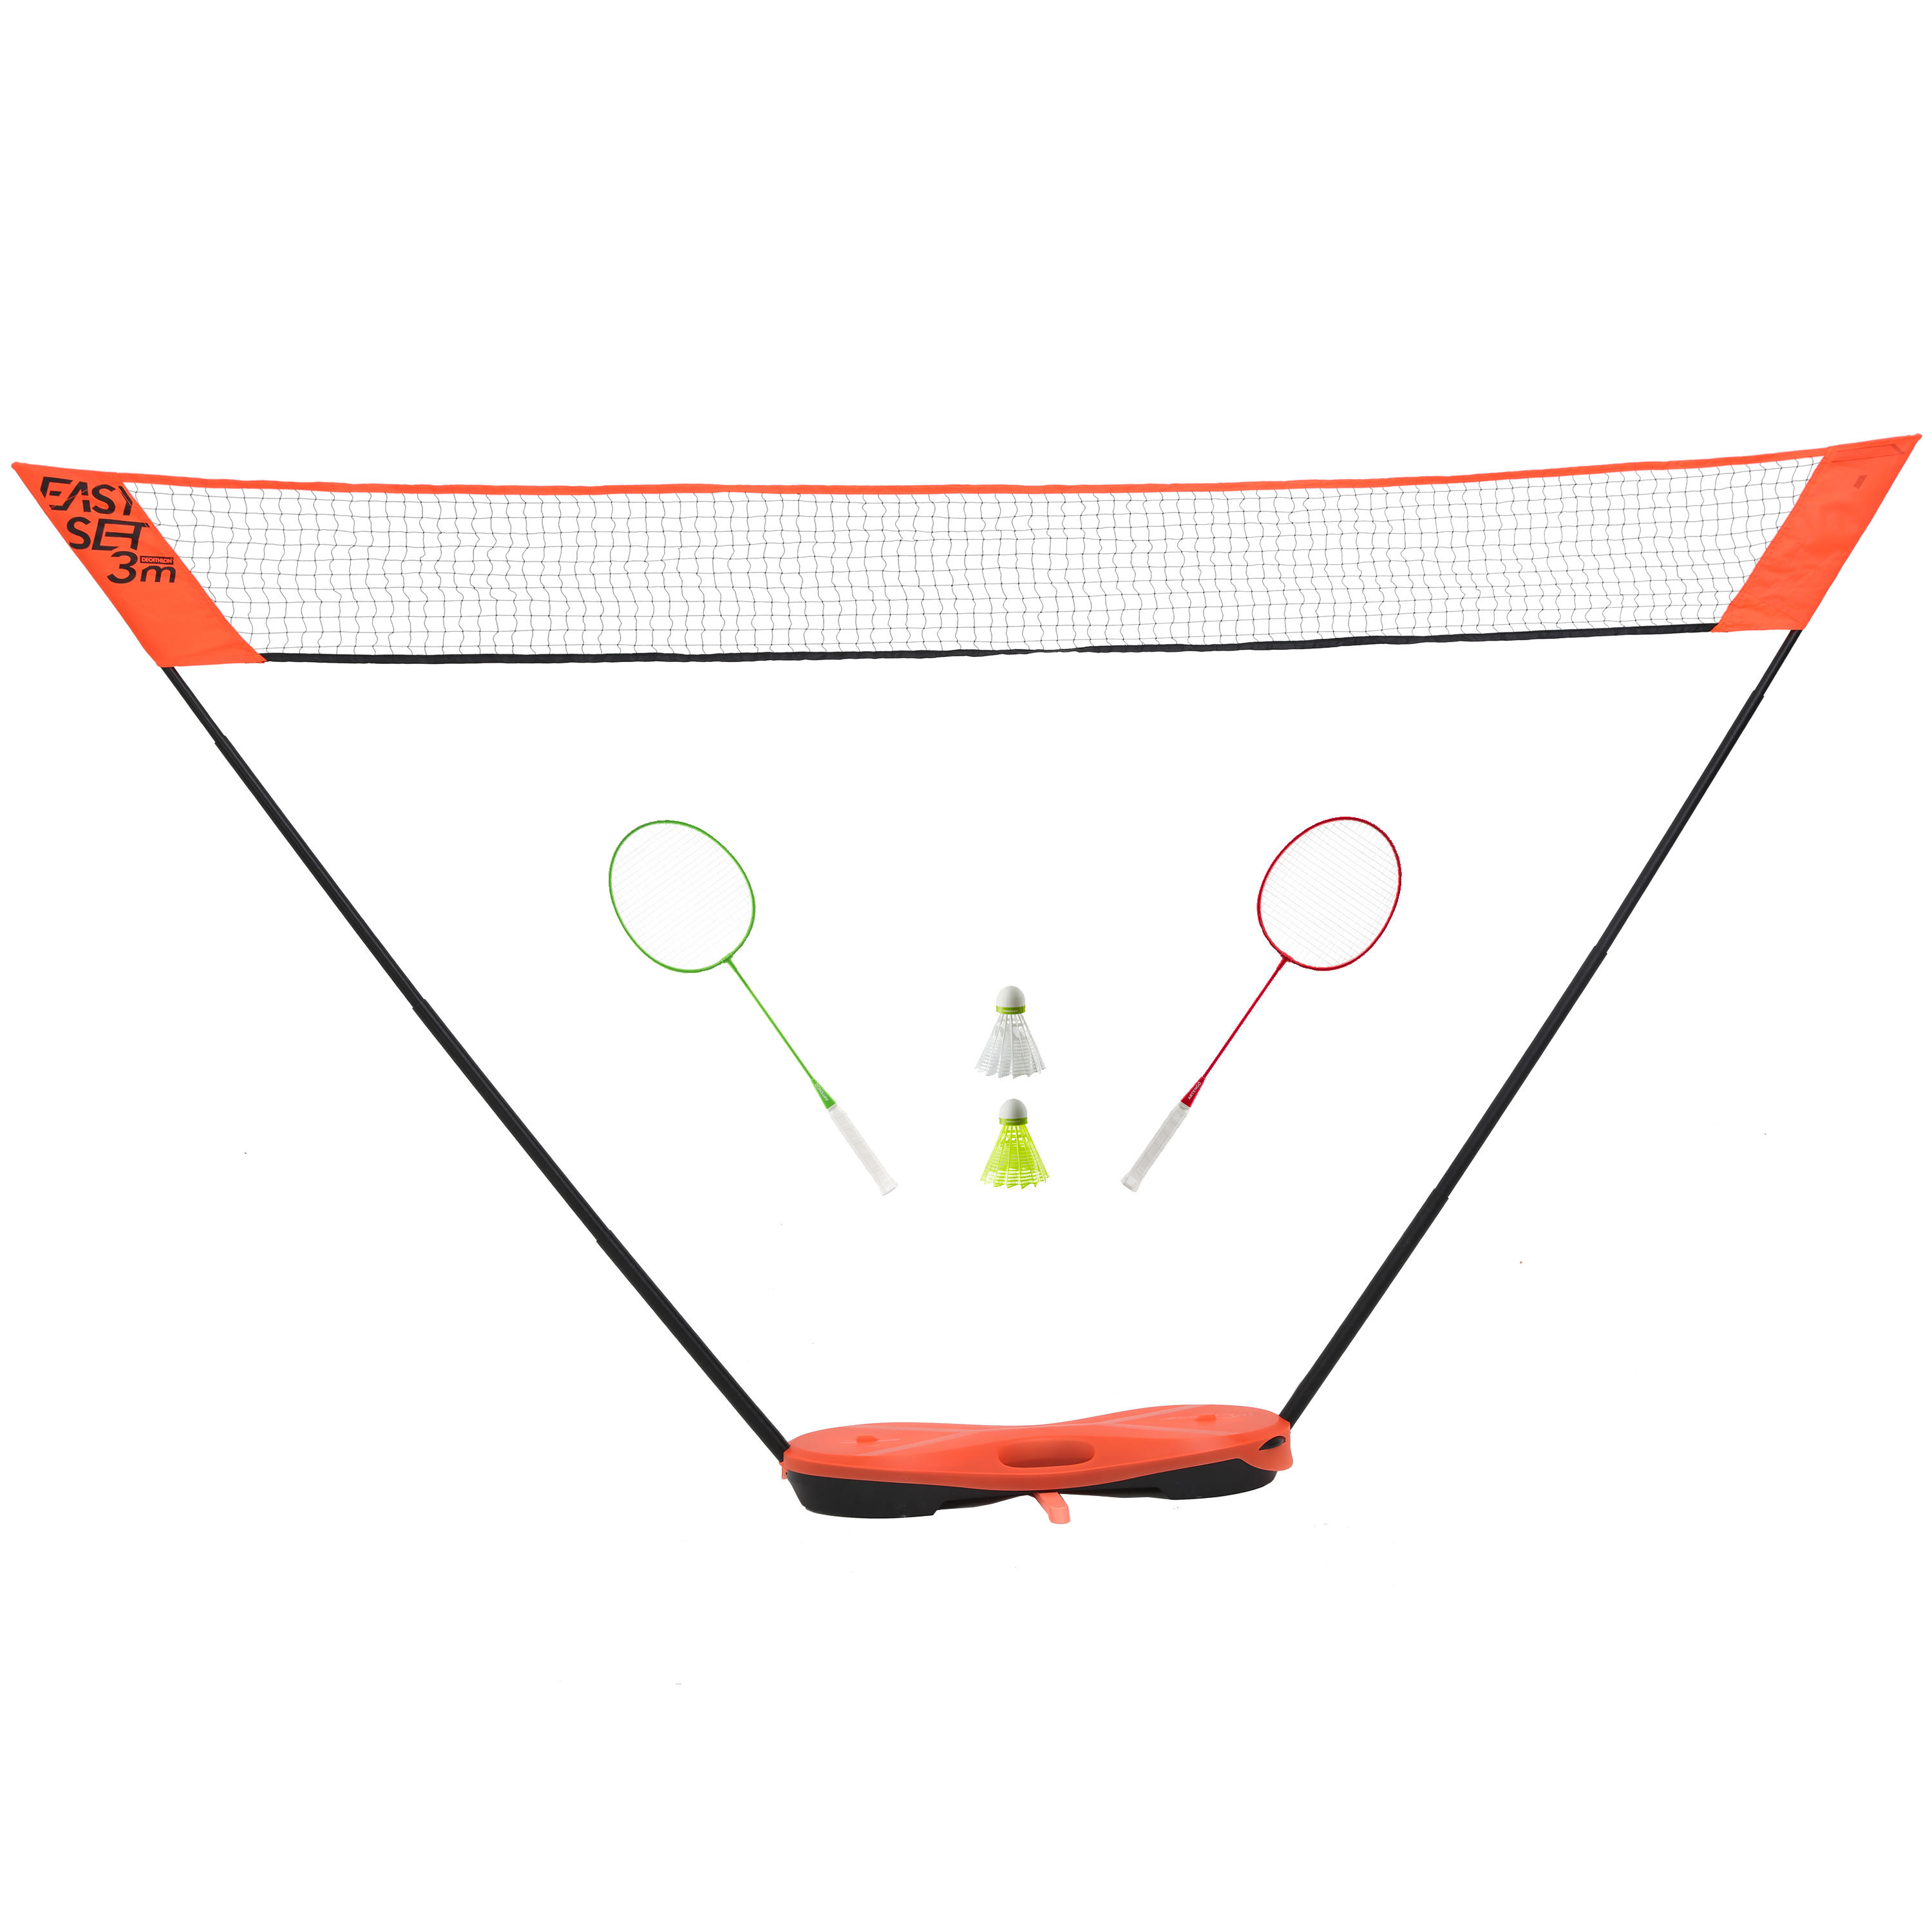 PERFLY 3 m Badminton Net Easy Set - Orange